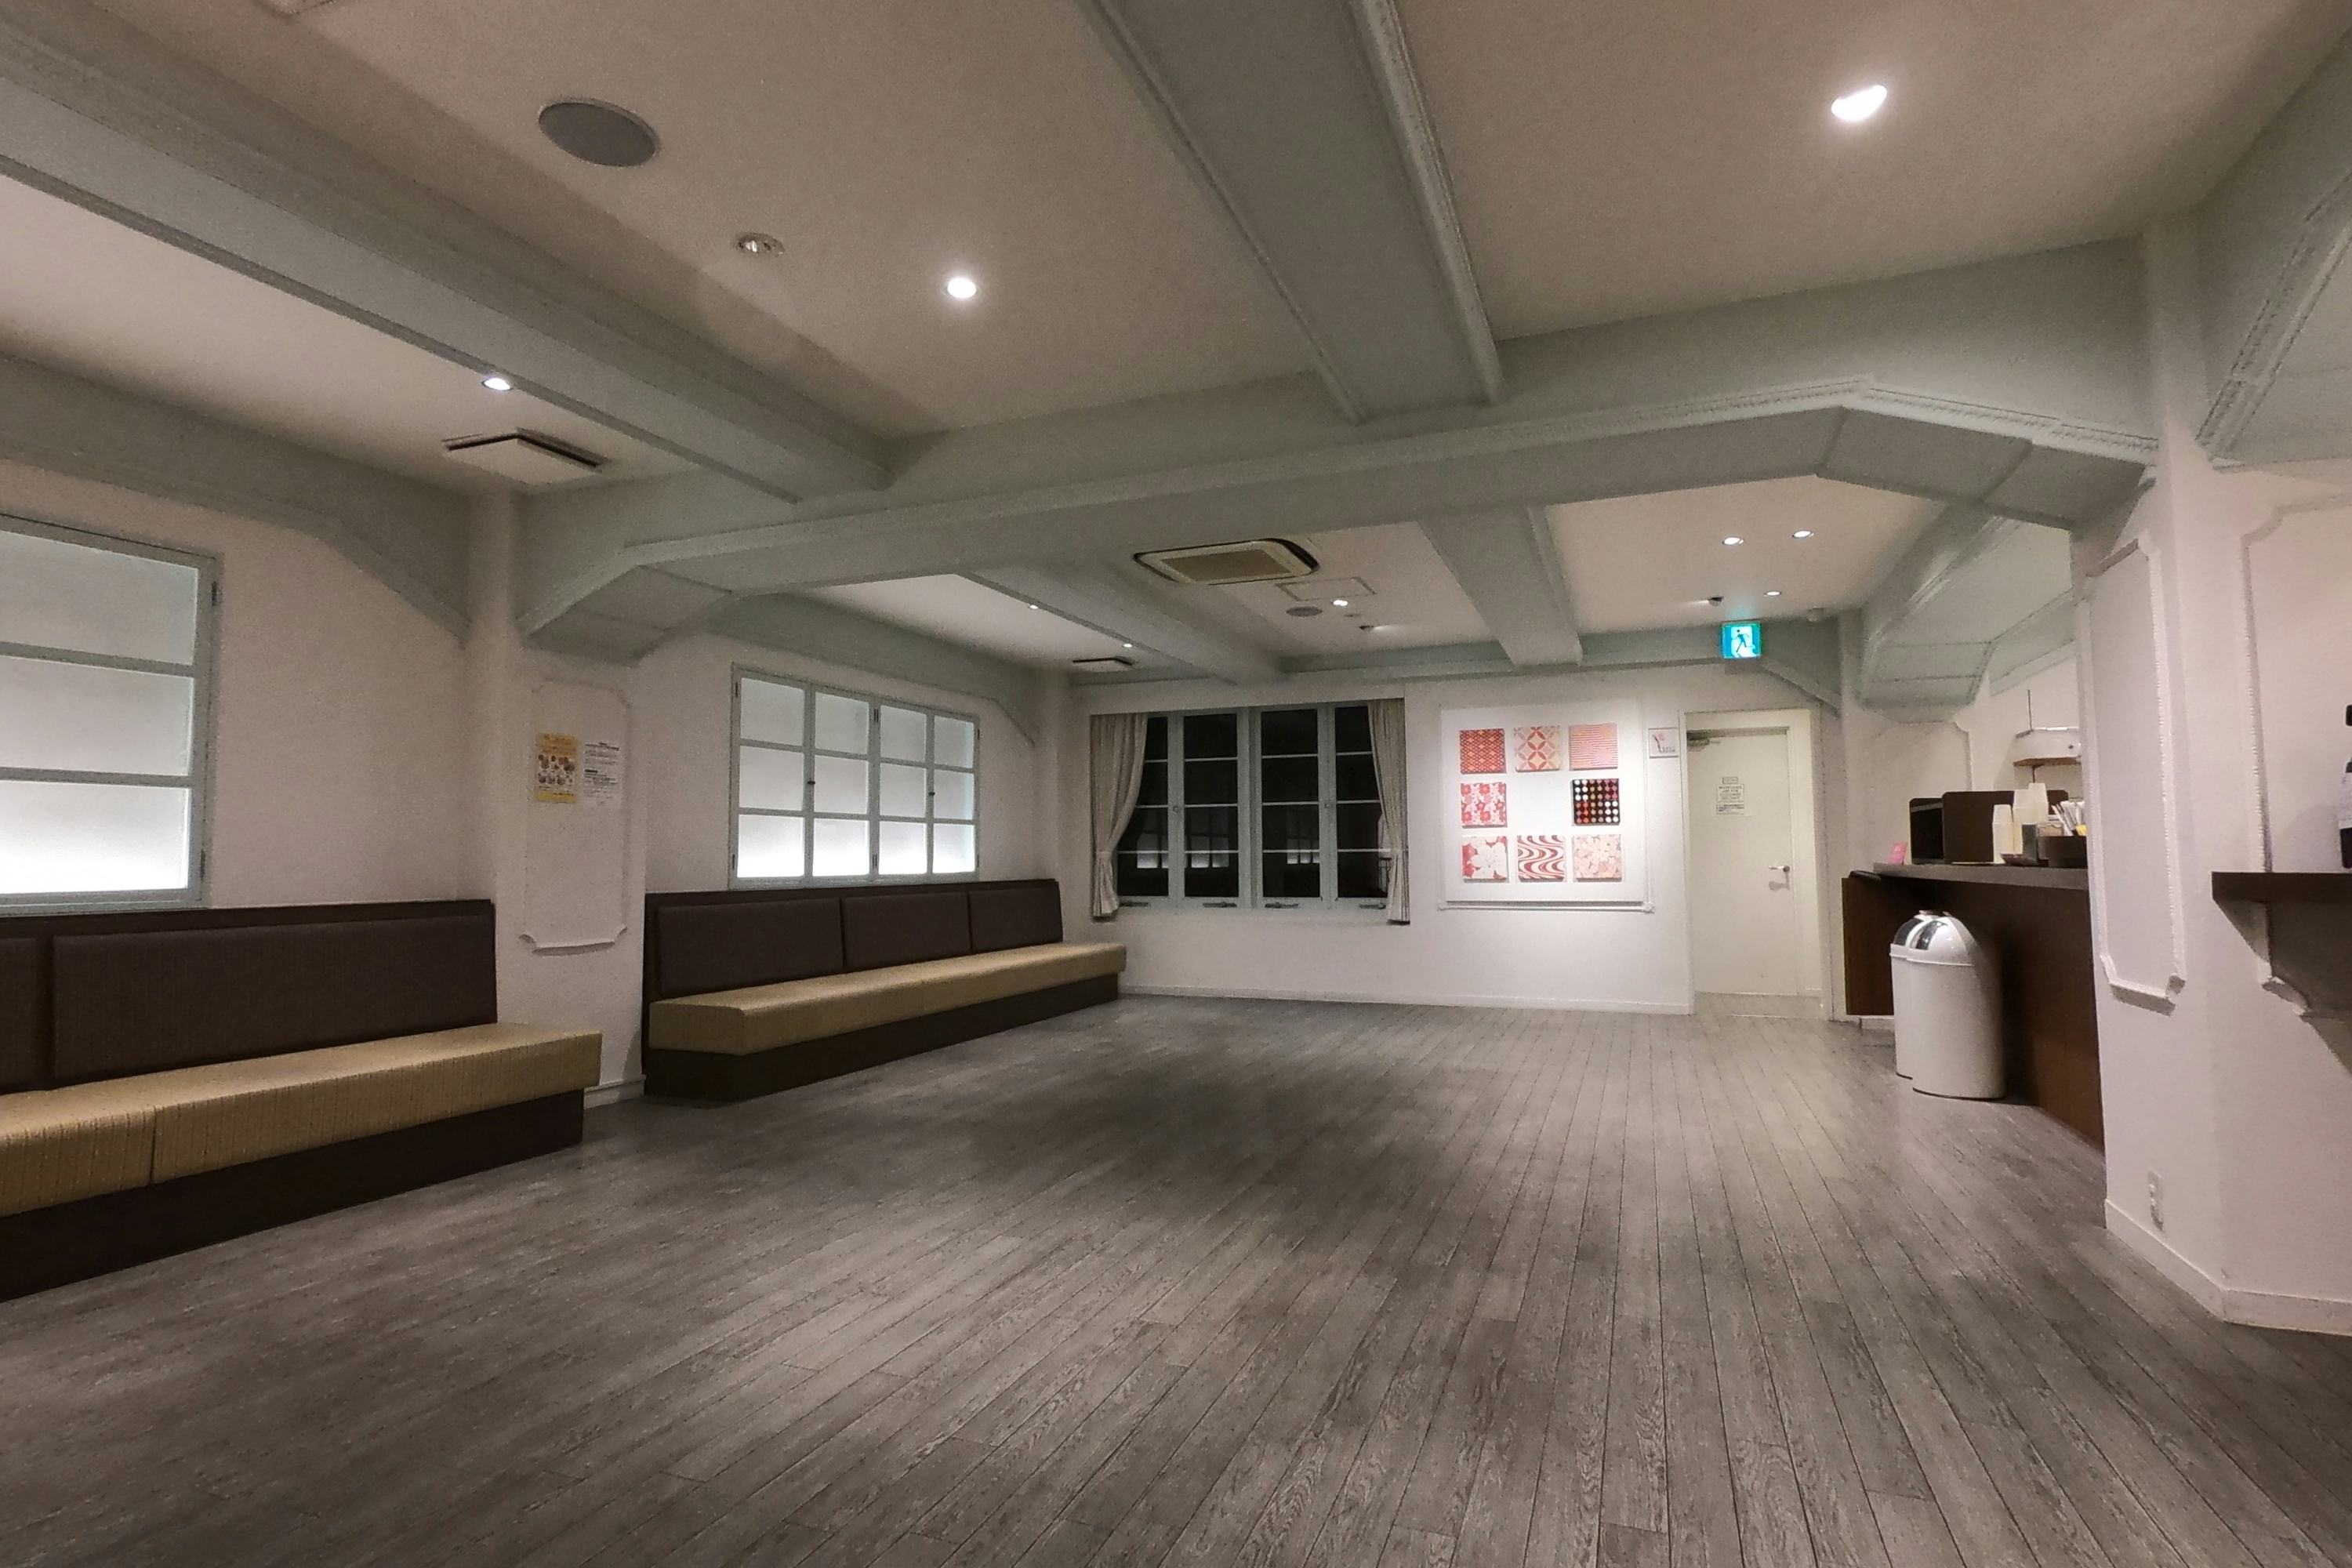 【祇園四条駅2分】展示会やポップアップカフェに最適な広々としたイベントスペース